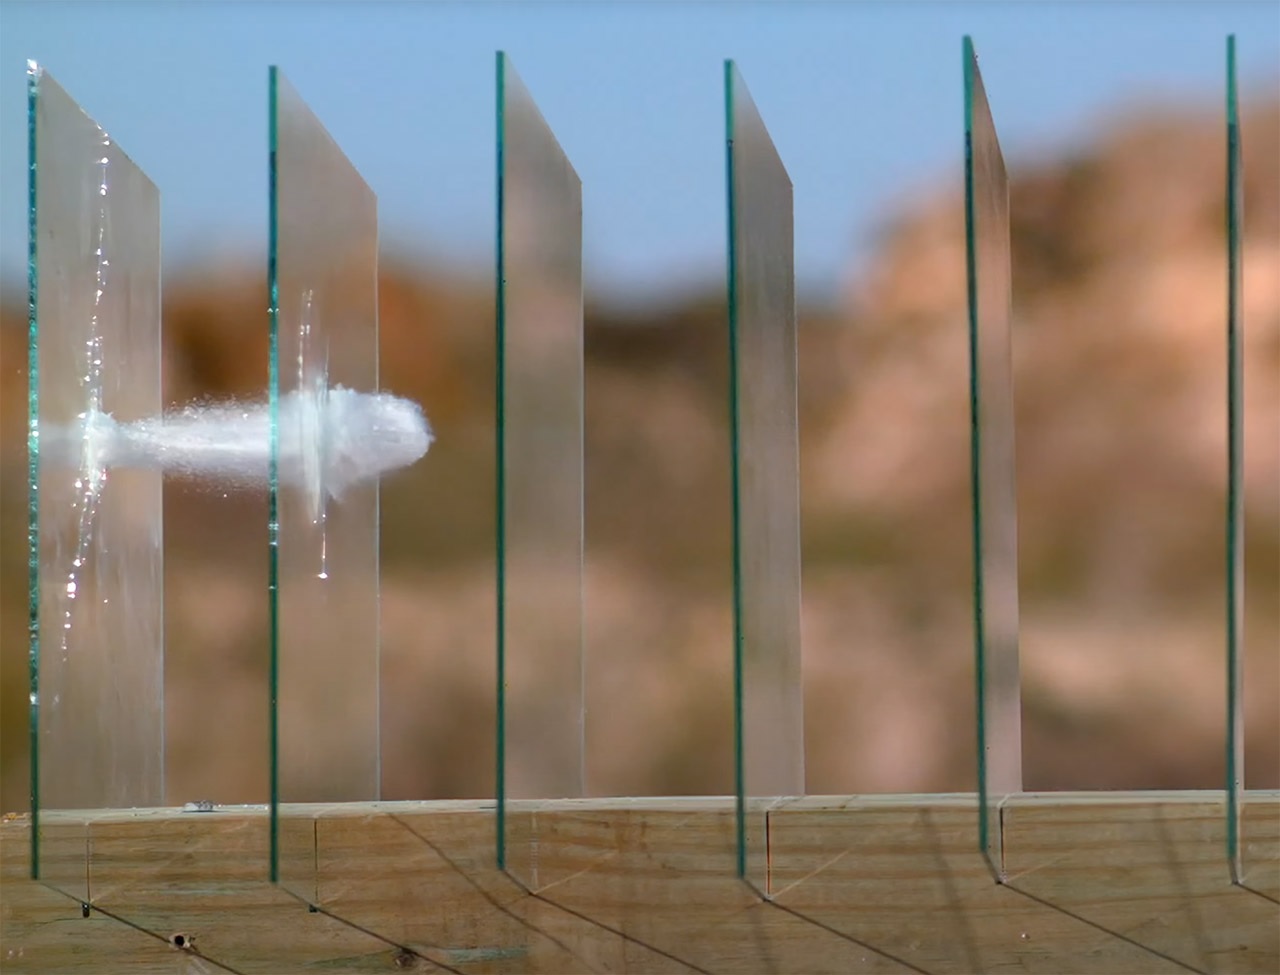 Usan cámara de alta velocidad para ver cuántos paneles de vidrio puede atravesar una bala de 9 mm